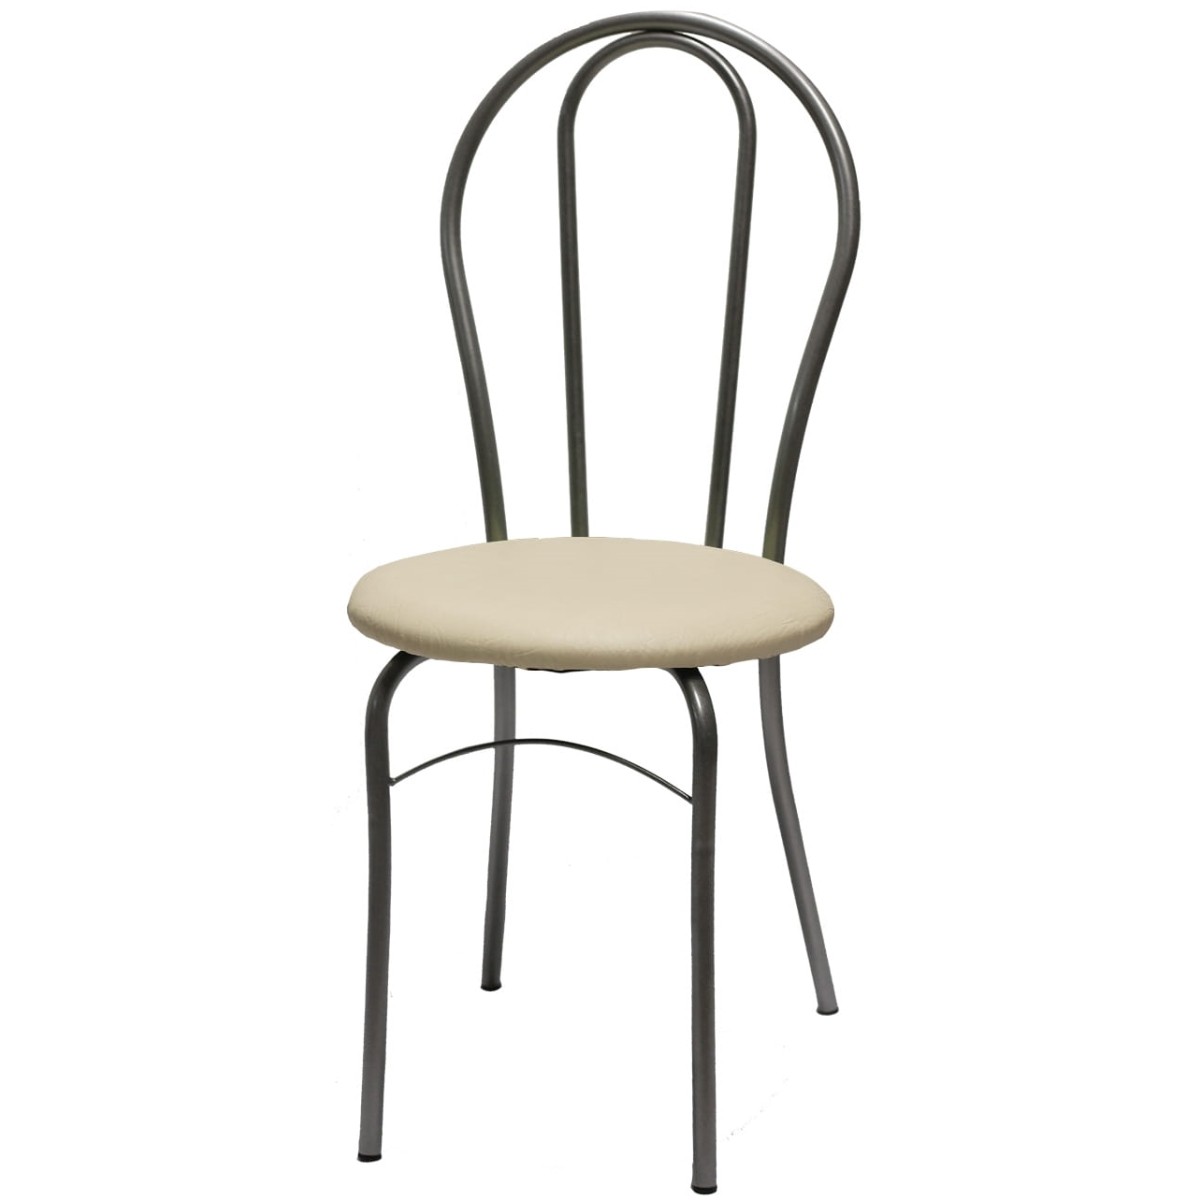 Купить стулья с металлической спинкой. Элегию-м стул. Кухонный стул Элегия. Стул Лайт-1 серебристый металлик/молочный. Железный стул со спинкой.